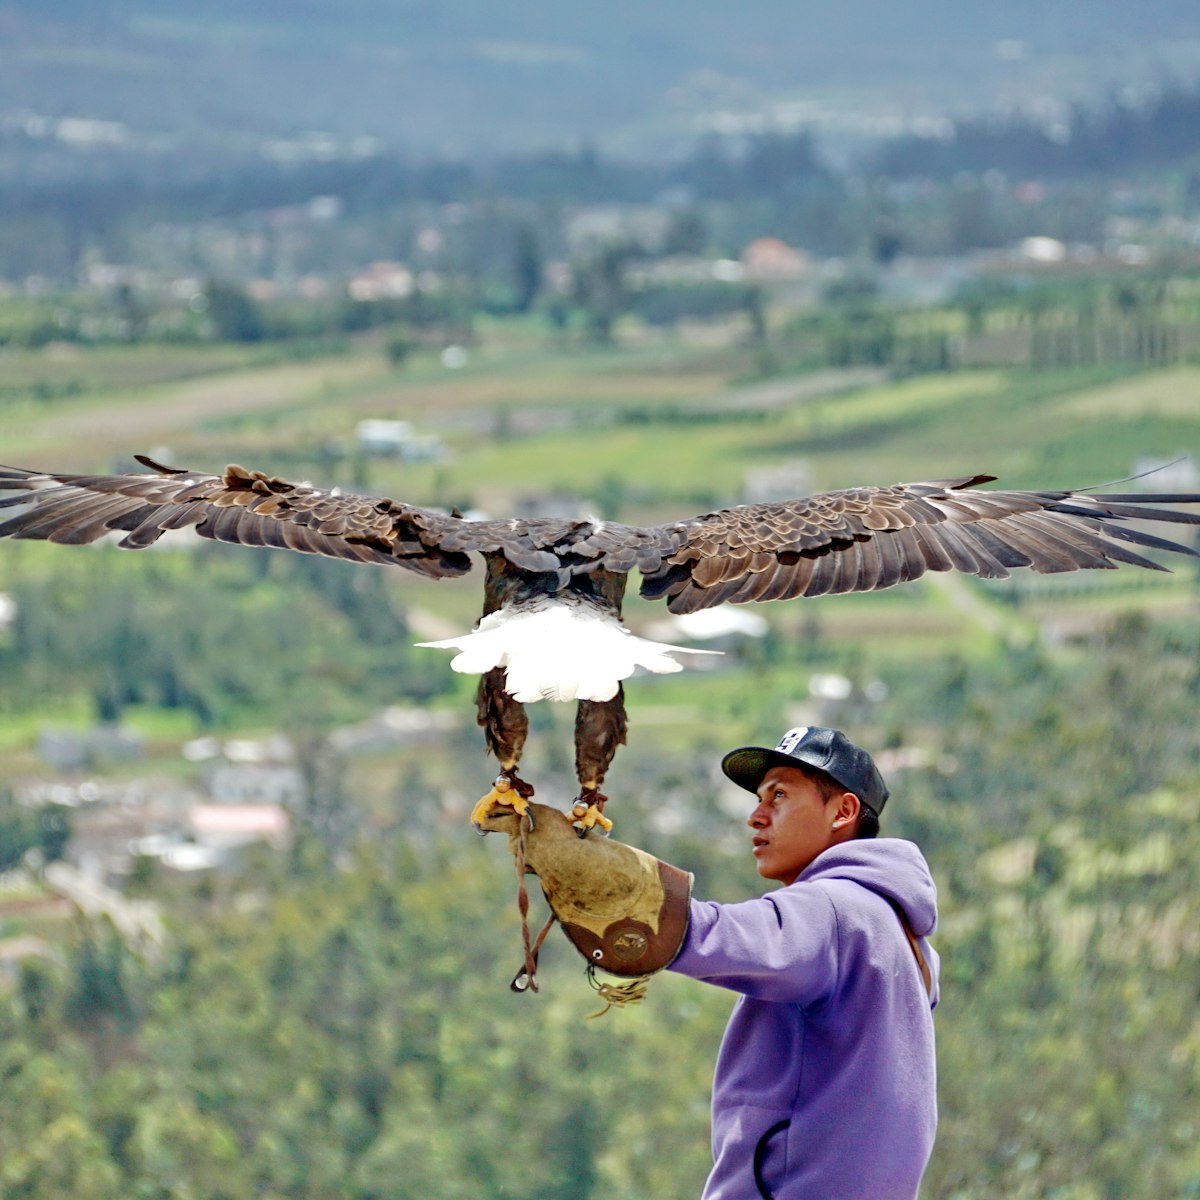 Bald eagle on a handler's arm at the Otavalo Condor Park.